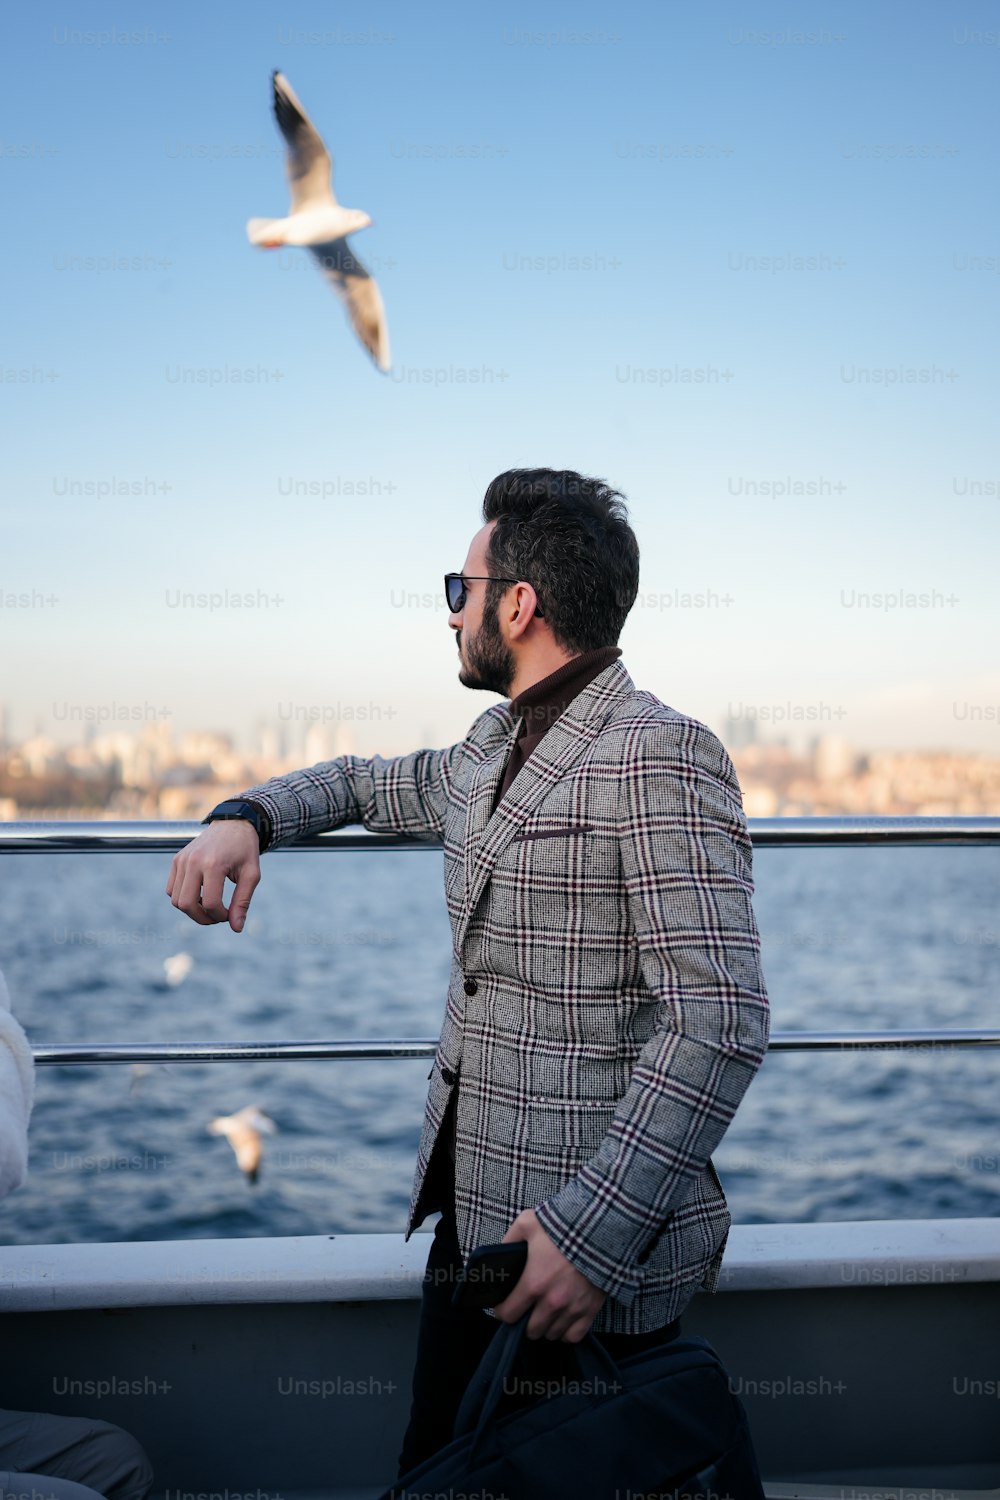 Un hombre parado en un bote mirando una gaviota